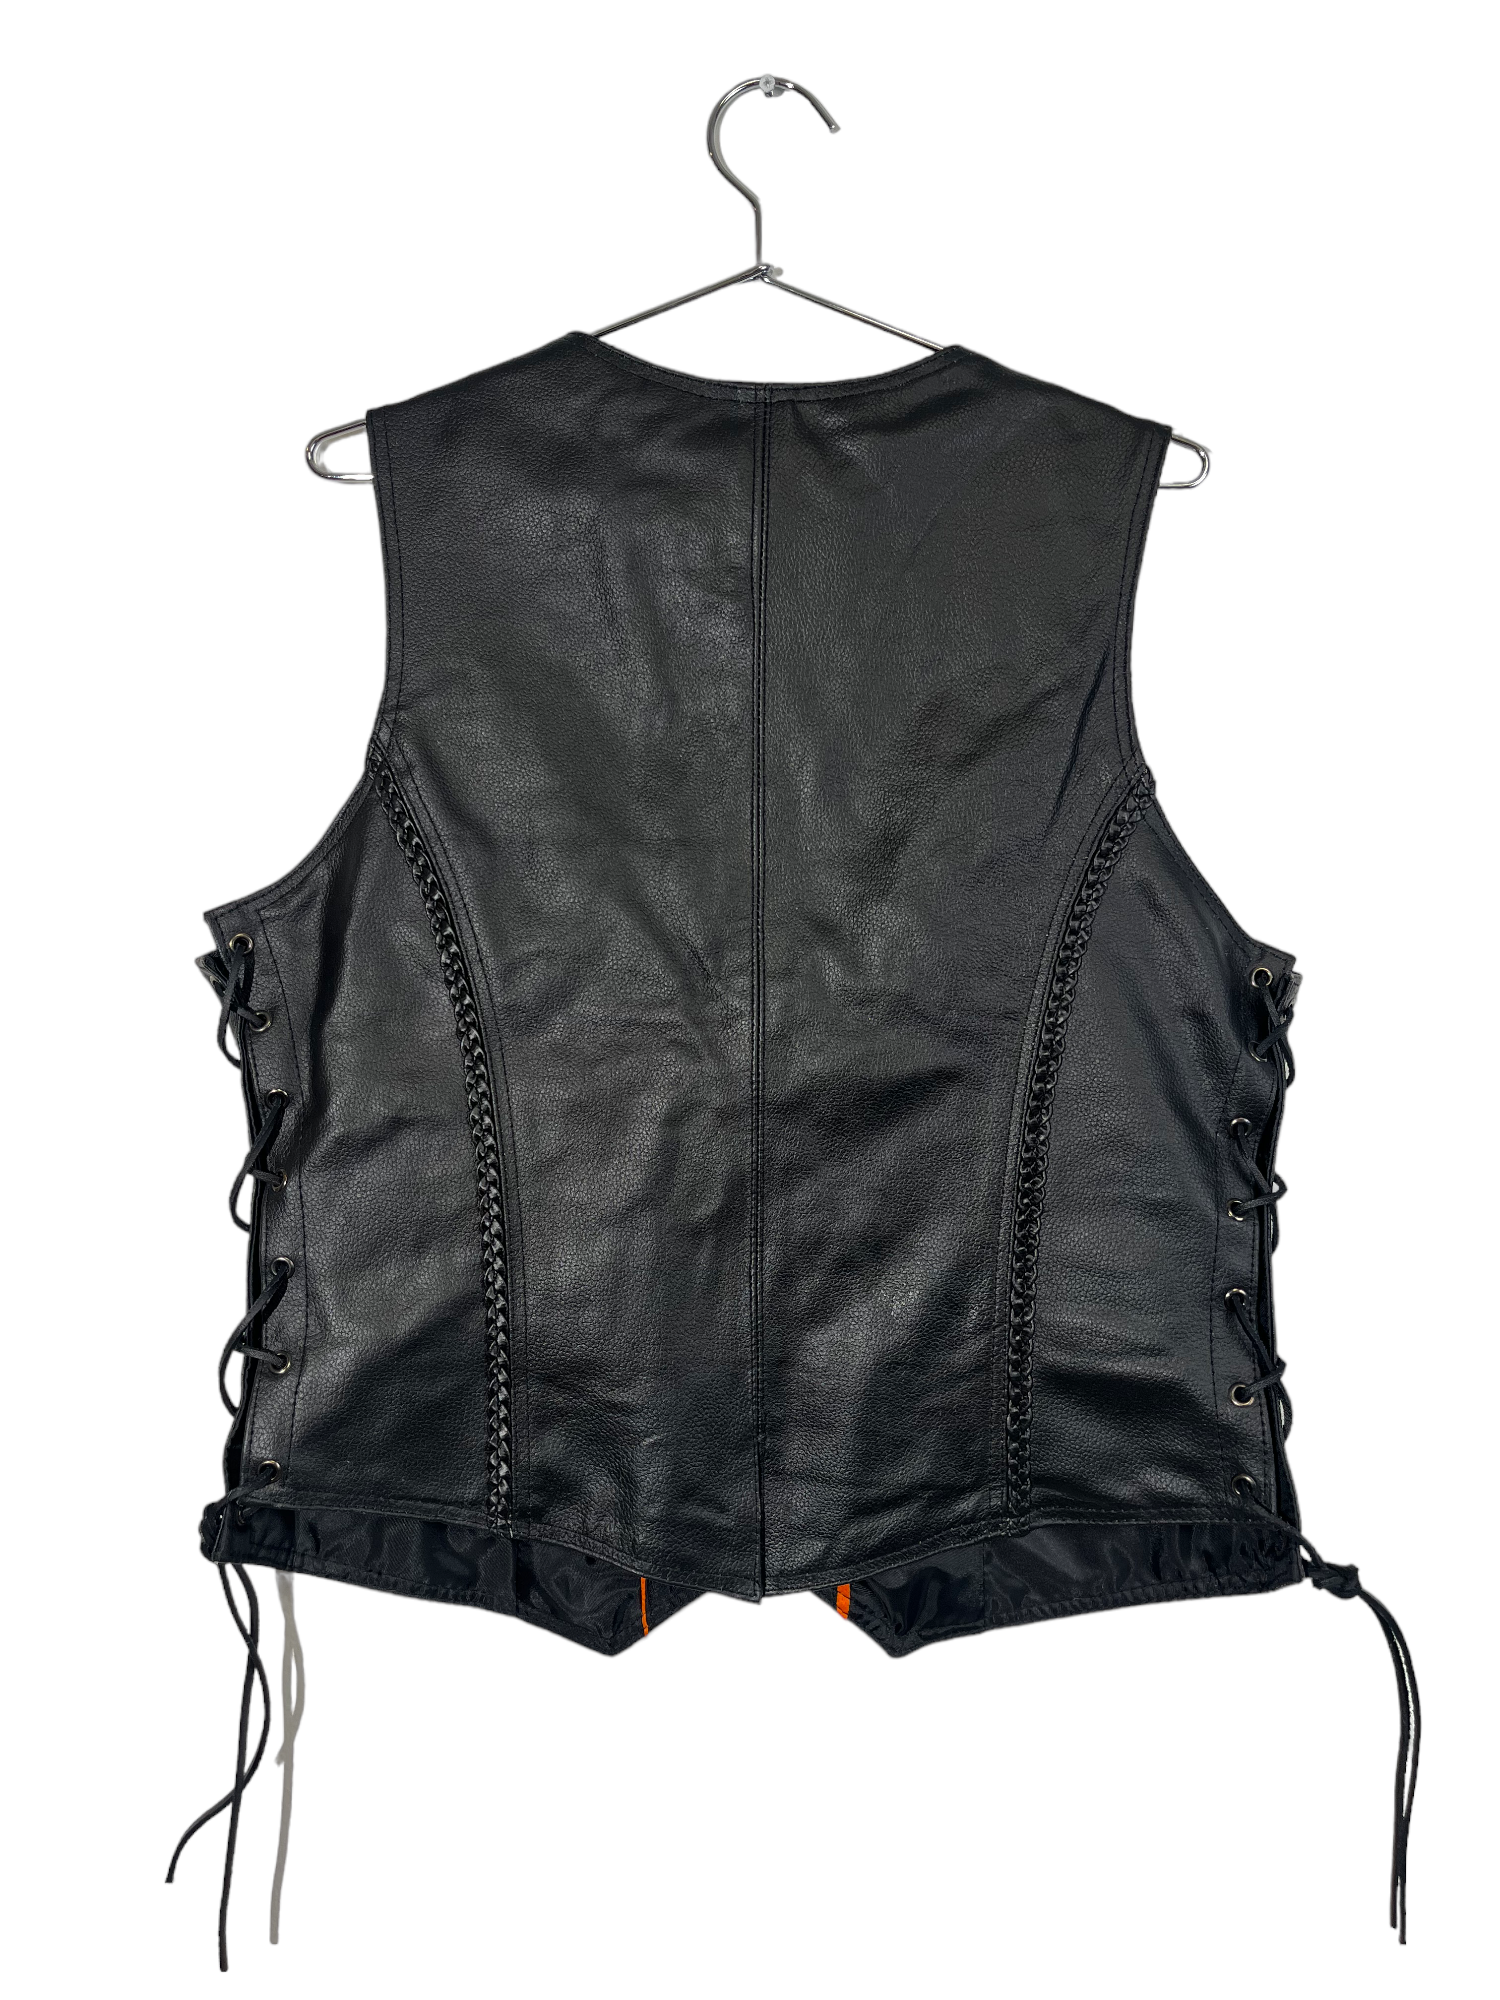 Dream Apparel Black Vest Lace up Detailing